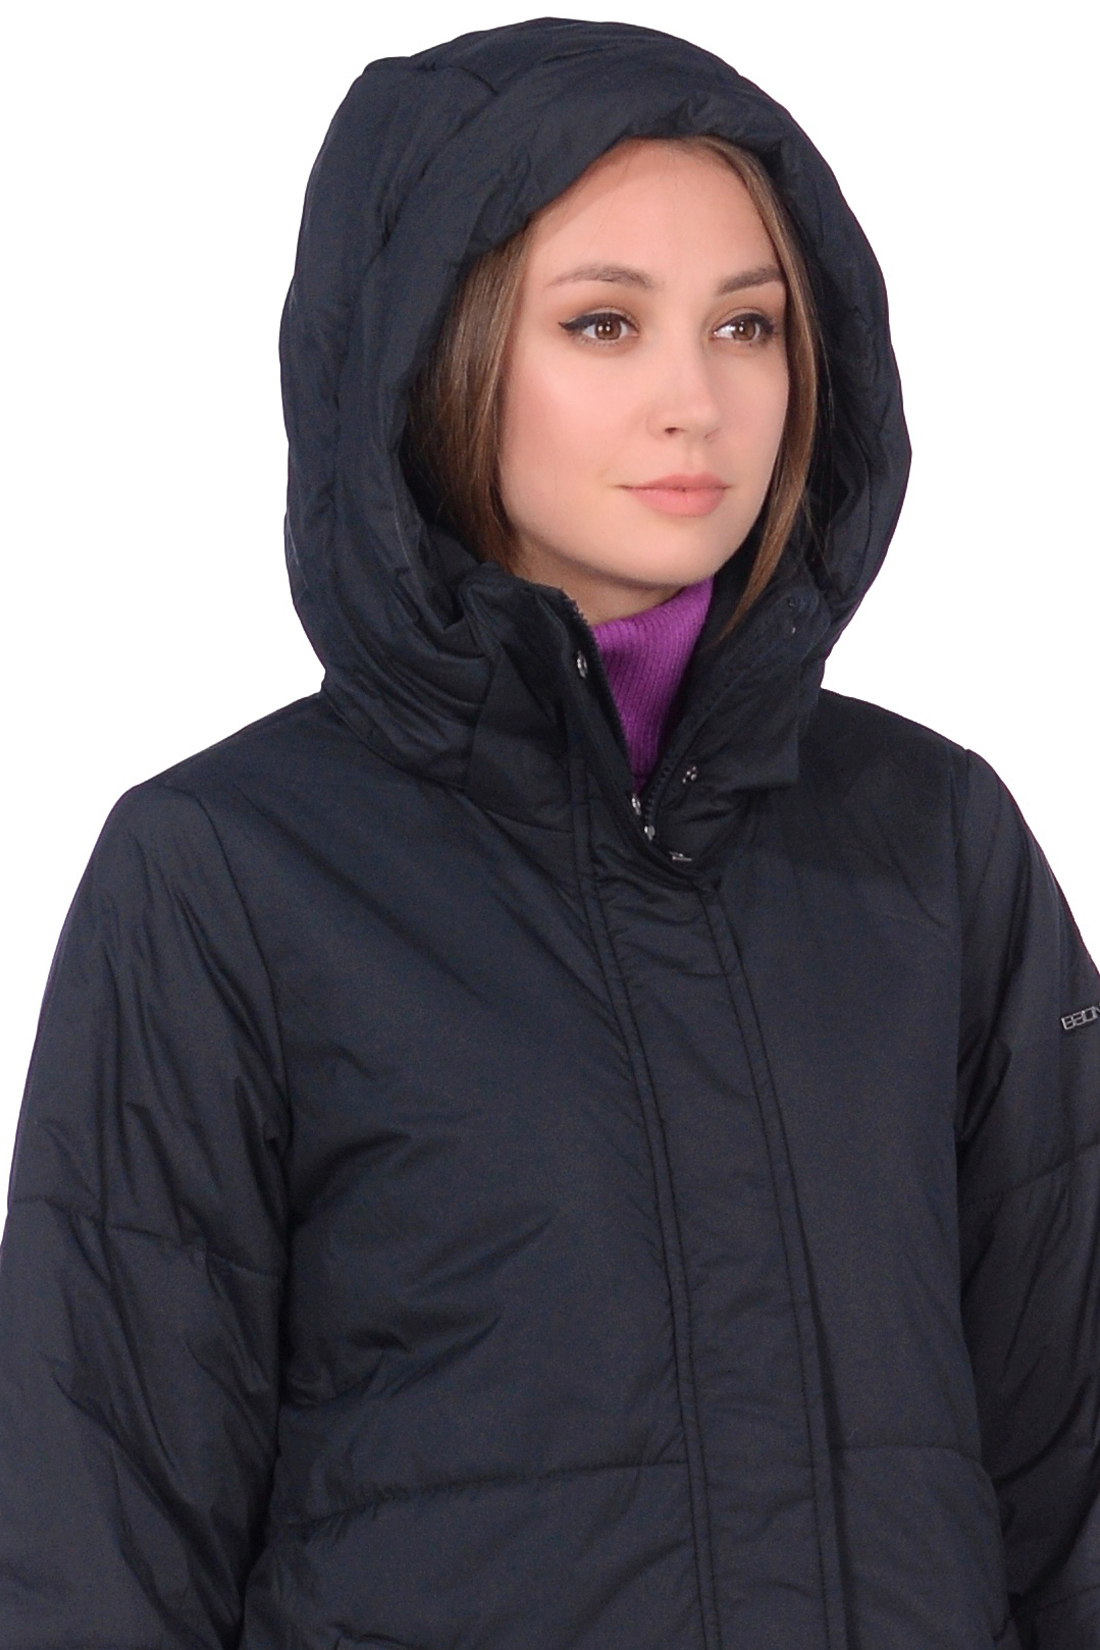 Куртка с молниями по бокам (арт. baon B038530), размер L, цвет черный Куртка с молниями по бокам (арт. baon B038530) - фото 3